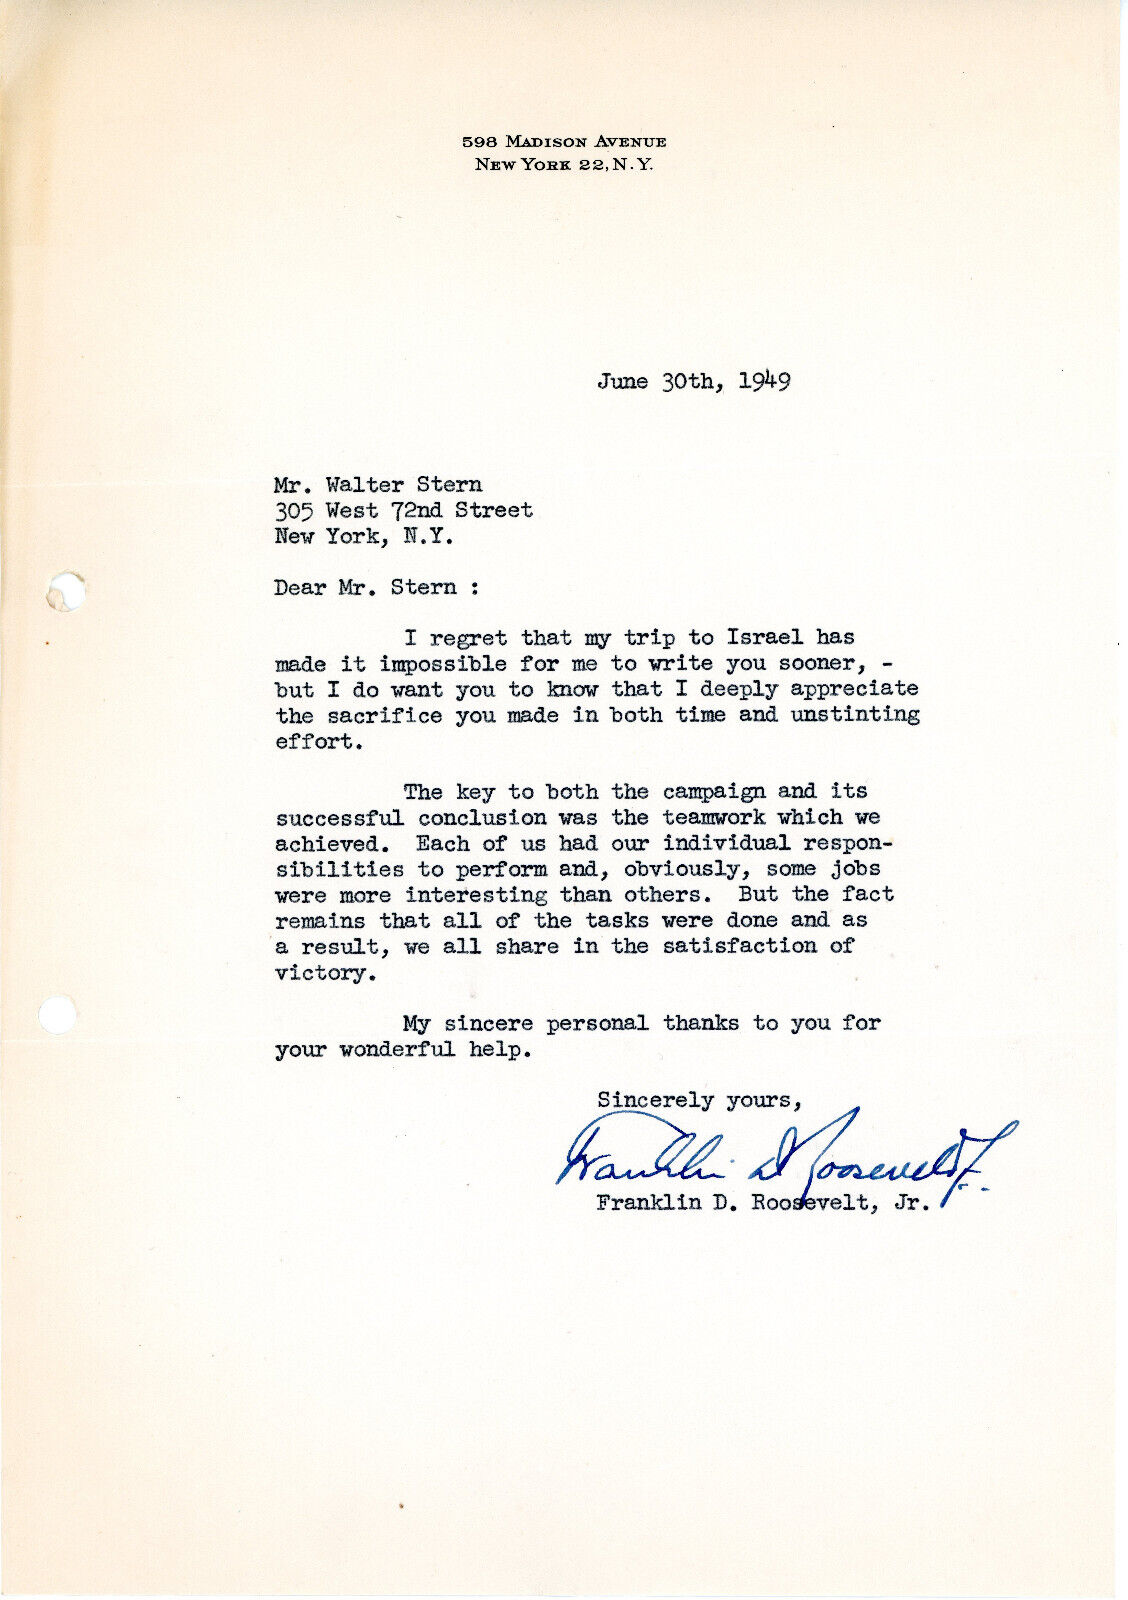 Franklin D Roosevelt Jr - Signed Letter 1949